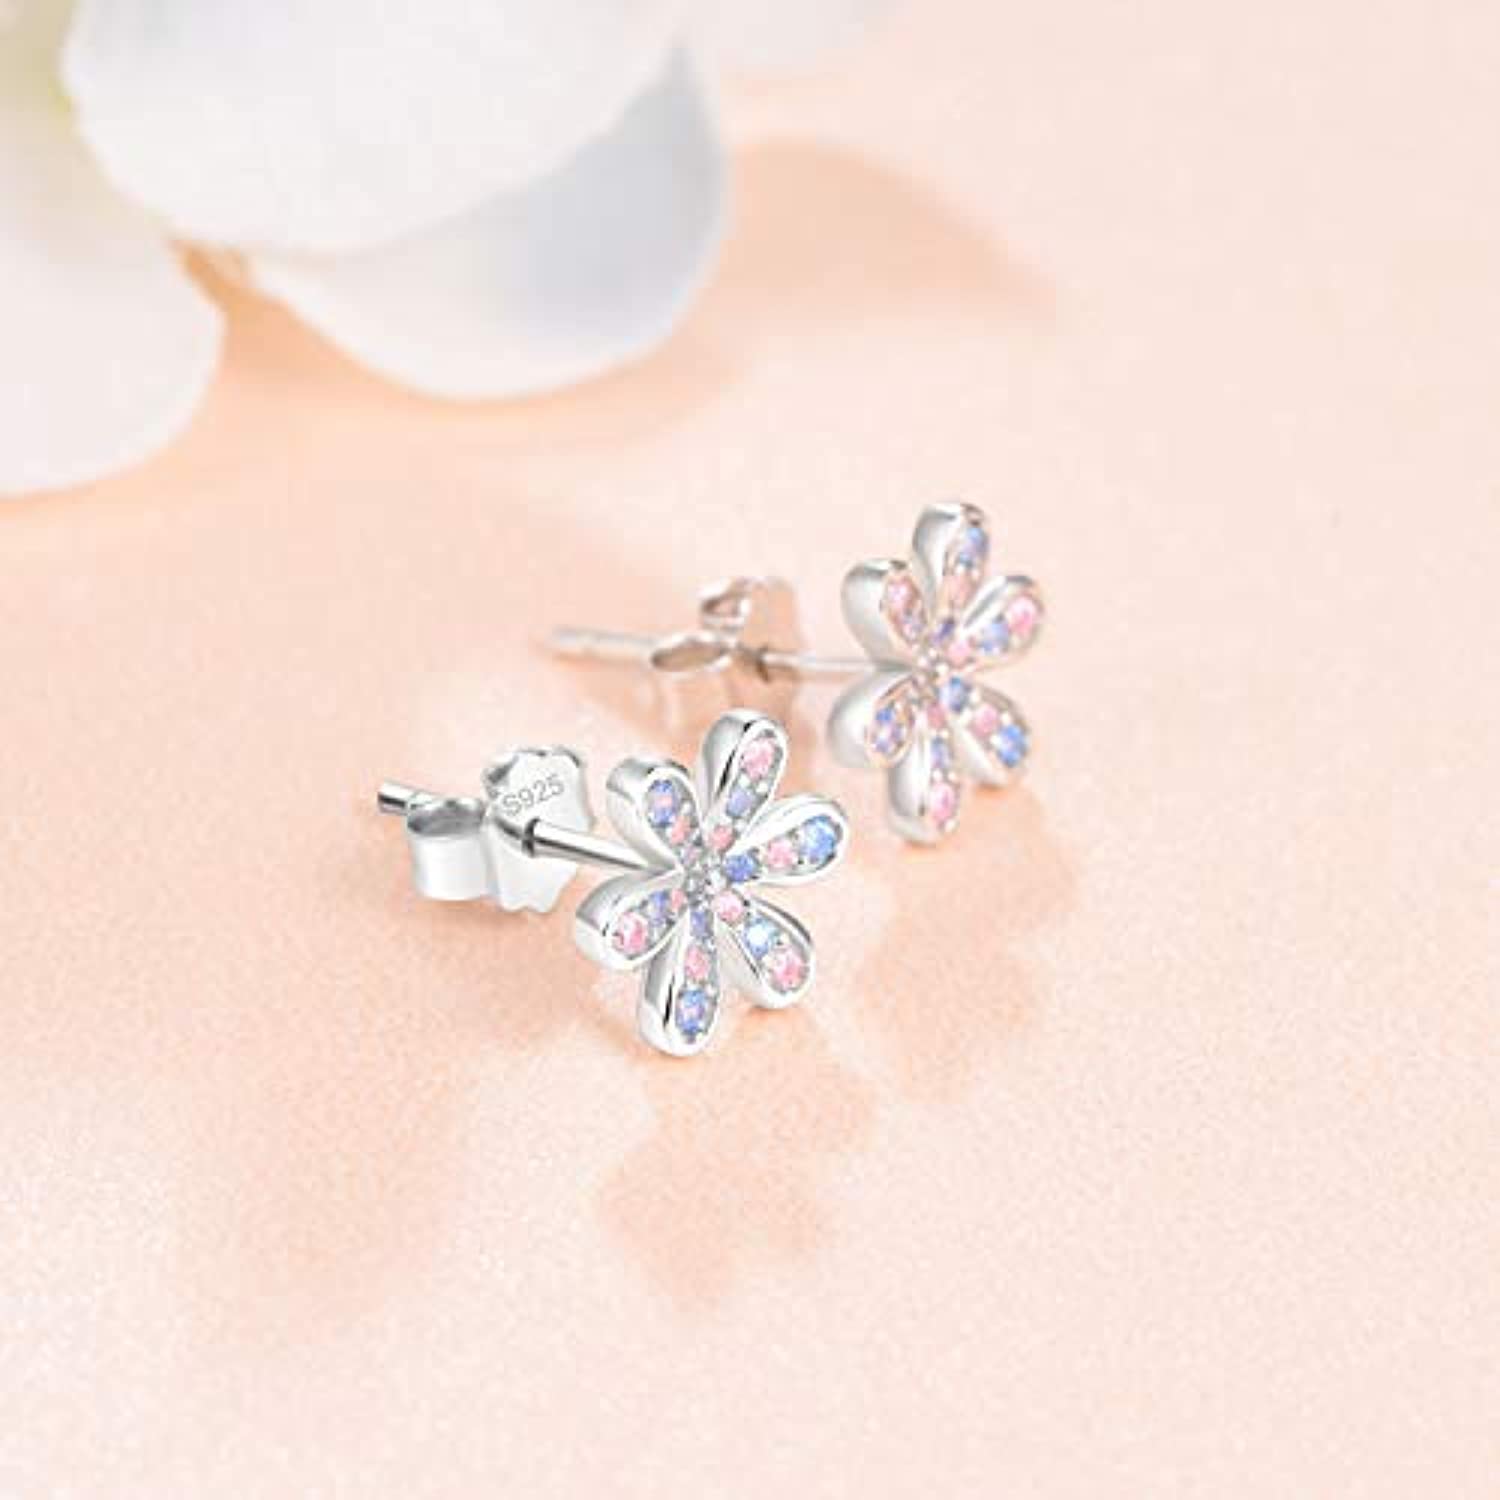 Sterling Silver Daisy Stud Earrings For Women Girls Hypoallergenic Cubic Zircoina Flowers Earrings